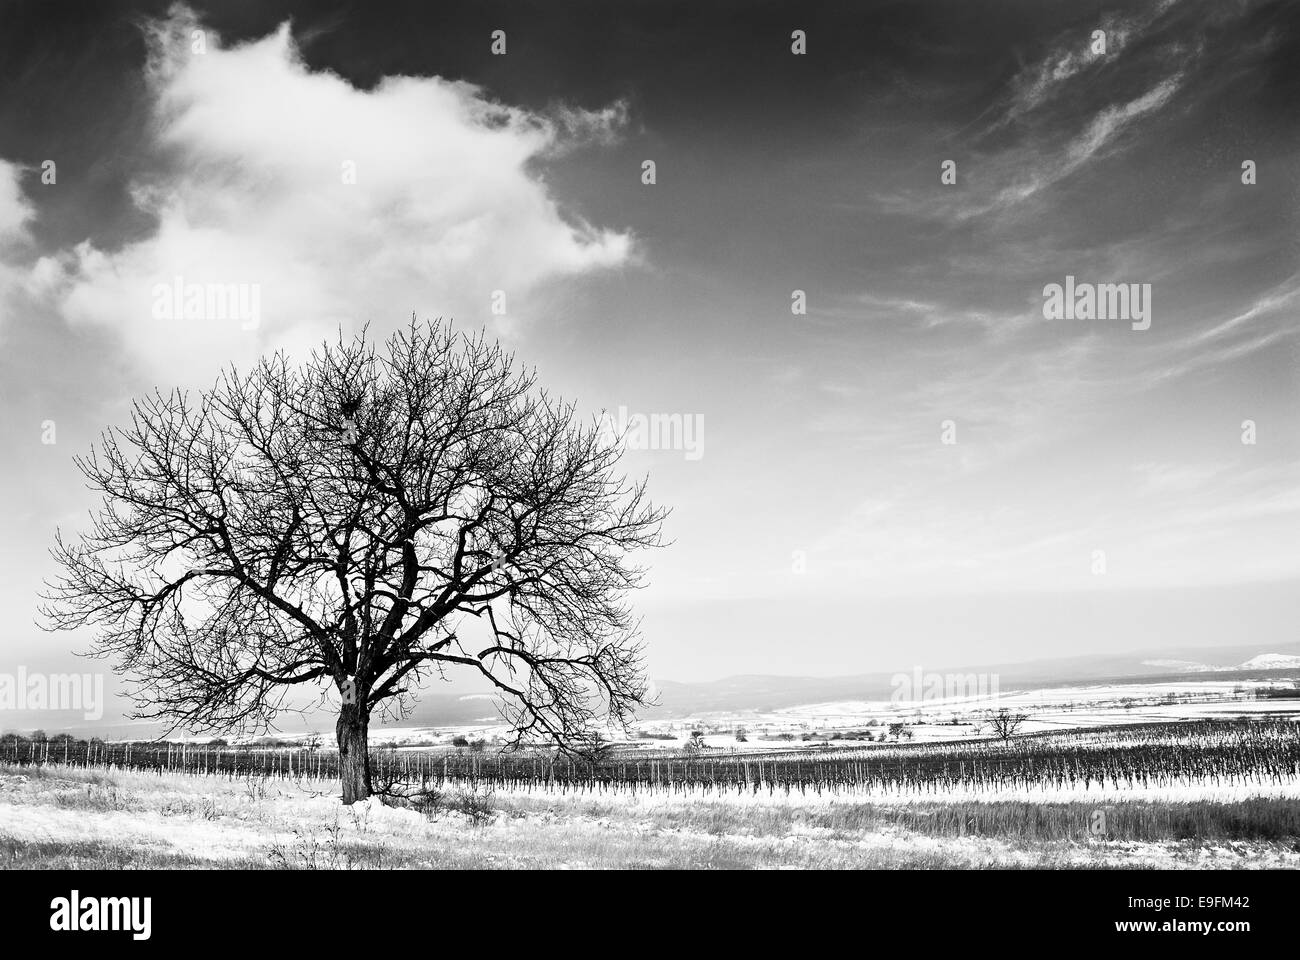 Paesaggio invernale bw con albero ciliegio Foto Stock